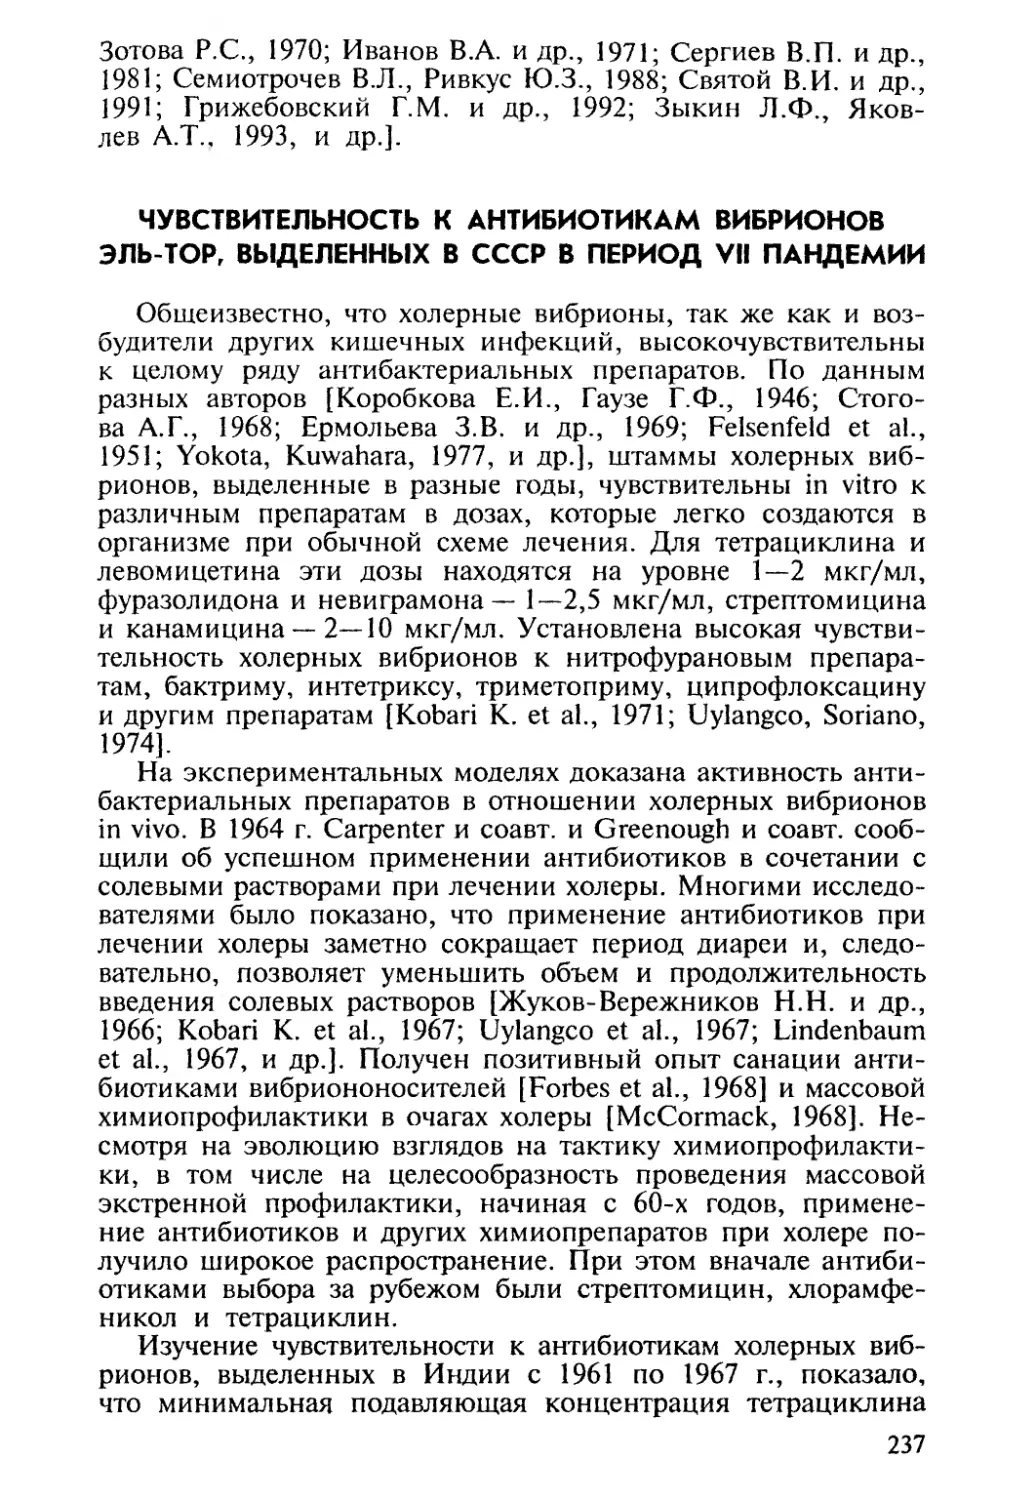 Чувствительность к антибиотикам вибрионов Эль-тор, выделенных в СССР в период VII пандемии